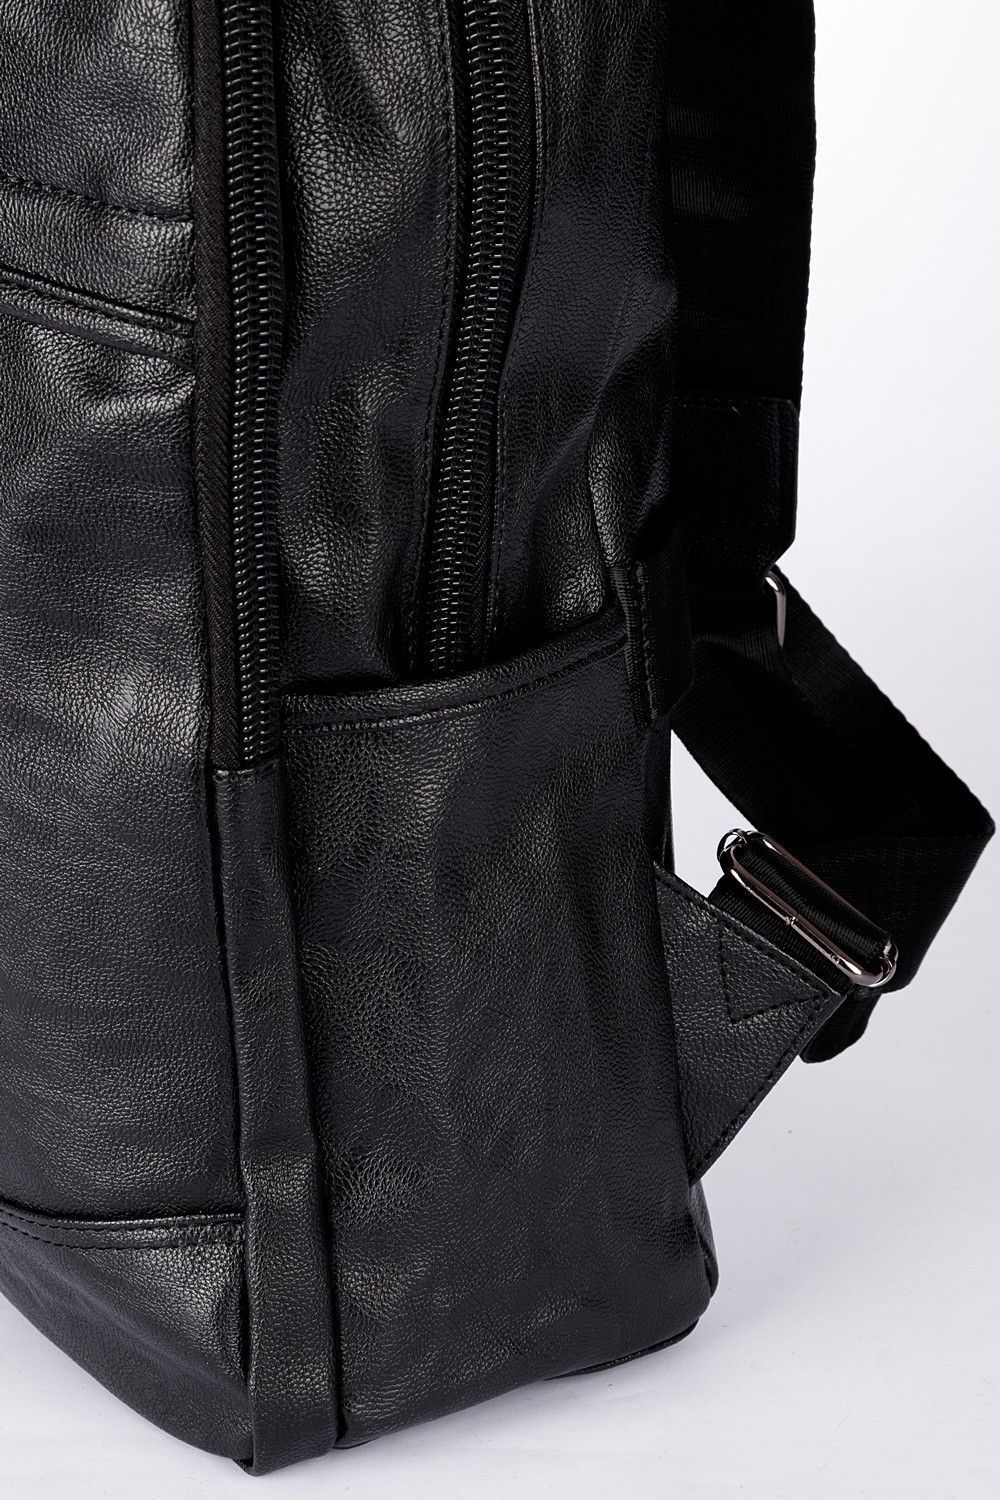 Рюкзак мужской / женский городской из искусственной кожи, черный, со стандартными лямками, объем 16л